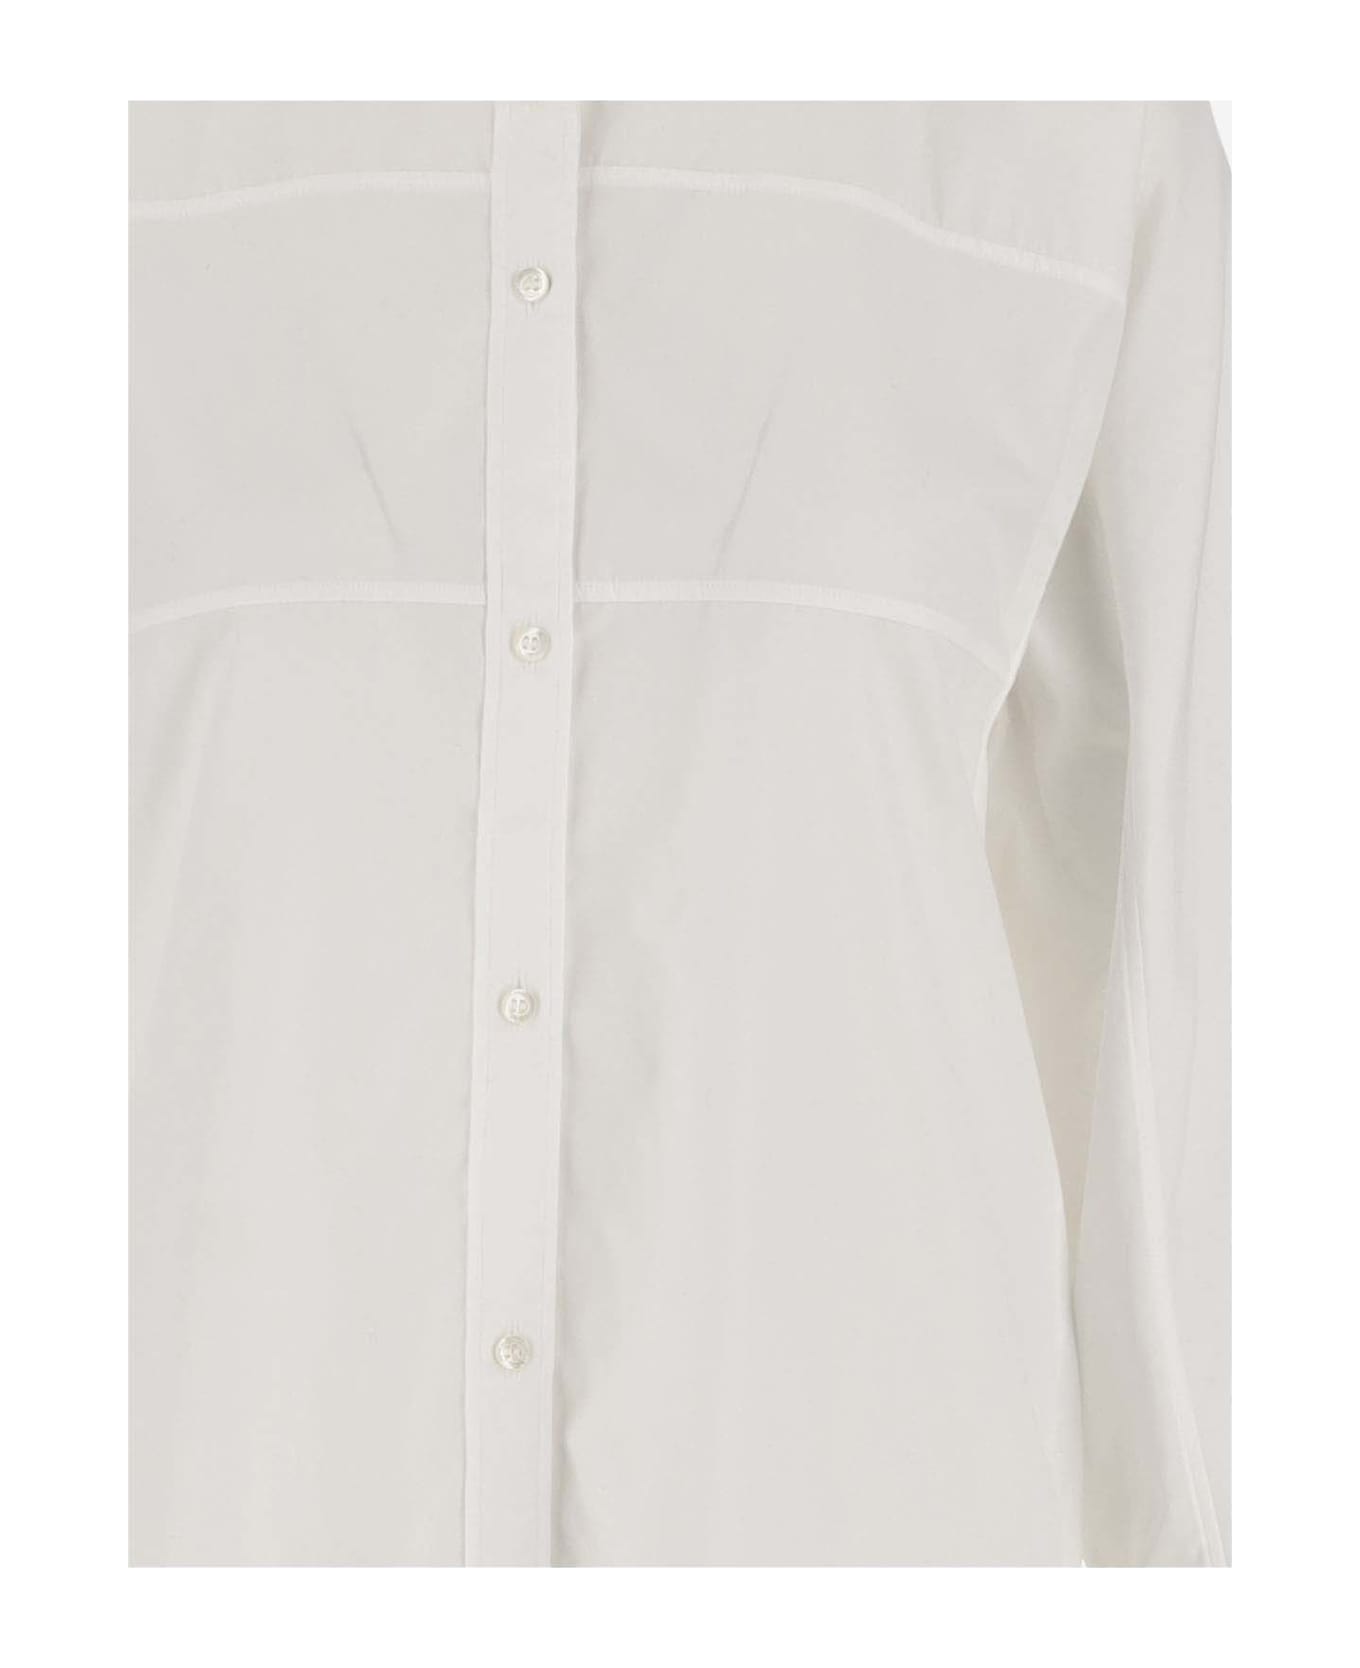 Aspesi Cotton Shirt - White シャツ